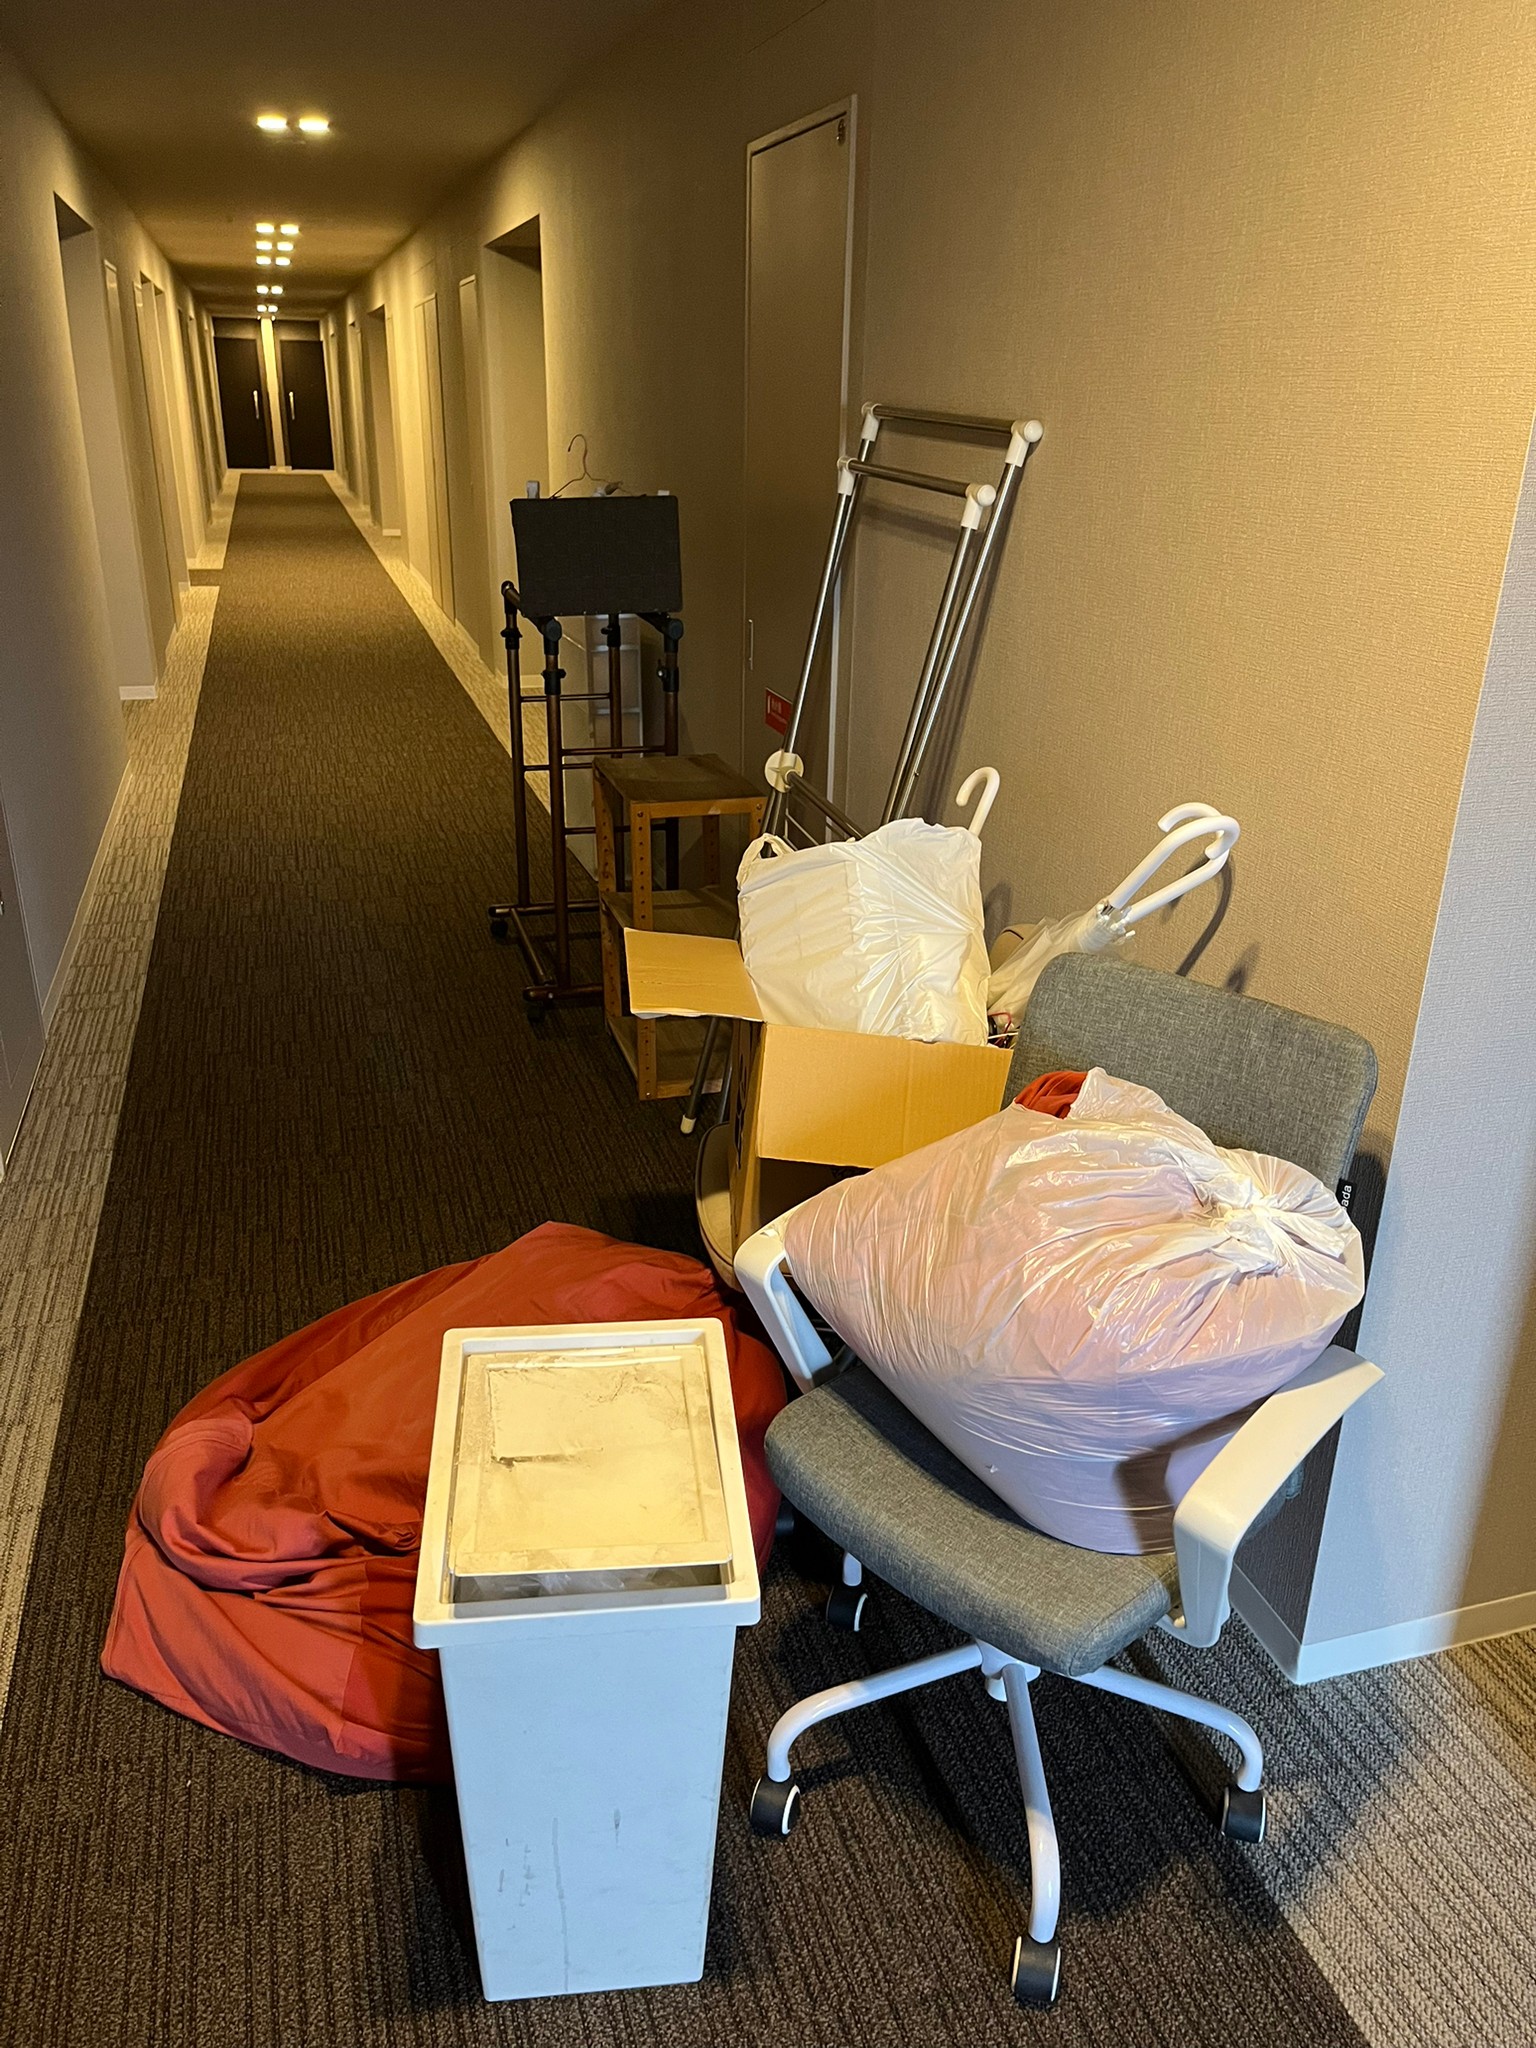 椅子、棚、ゴミ箱、クッション、傘などの回収前の状態